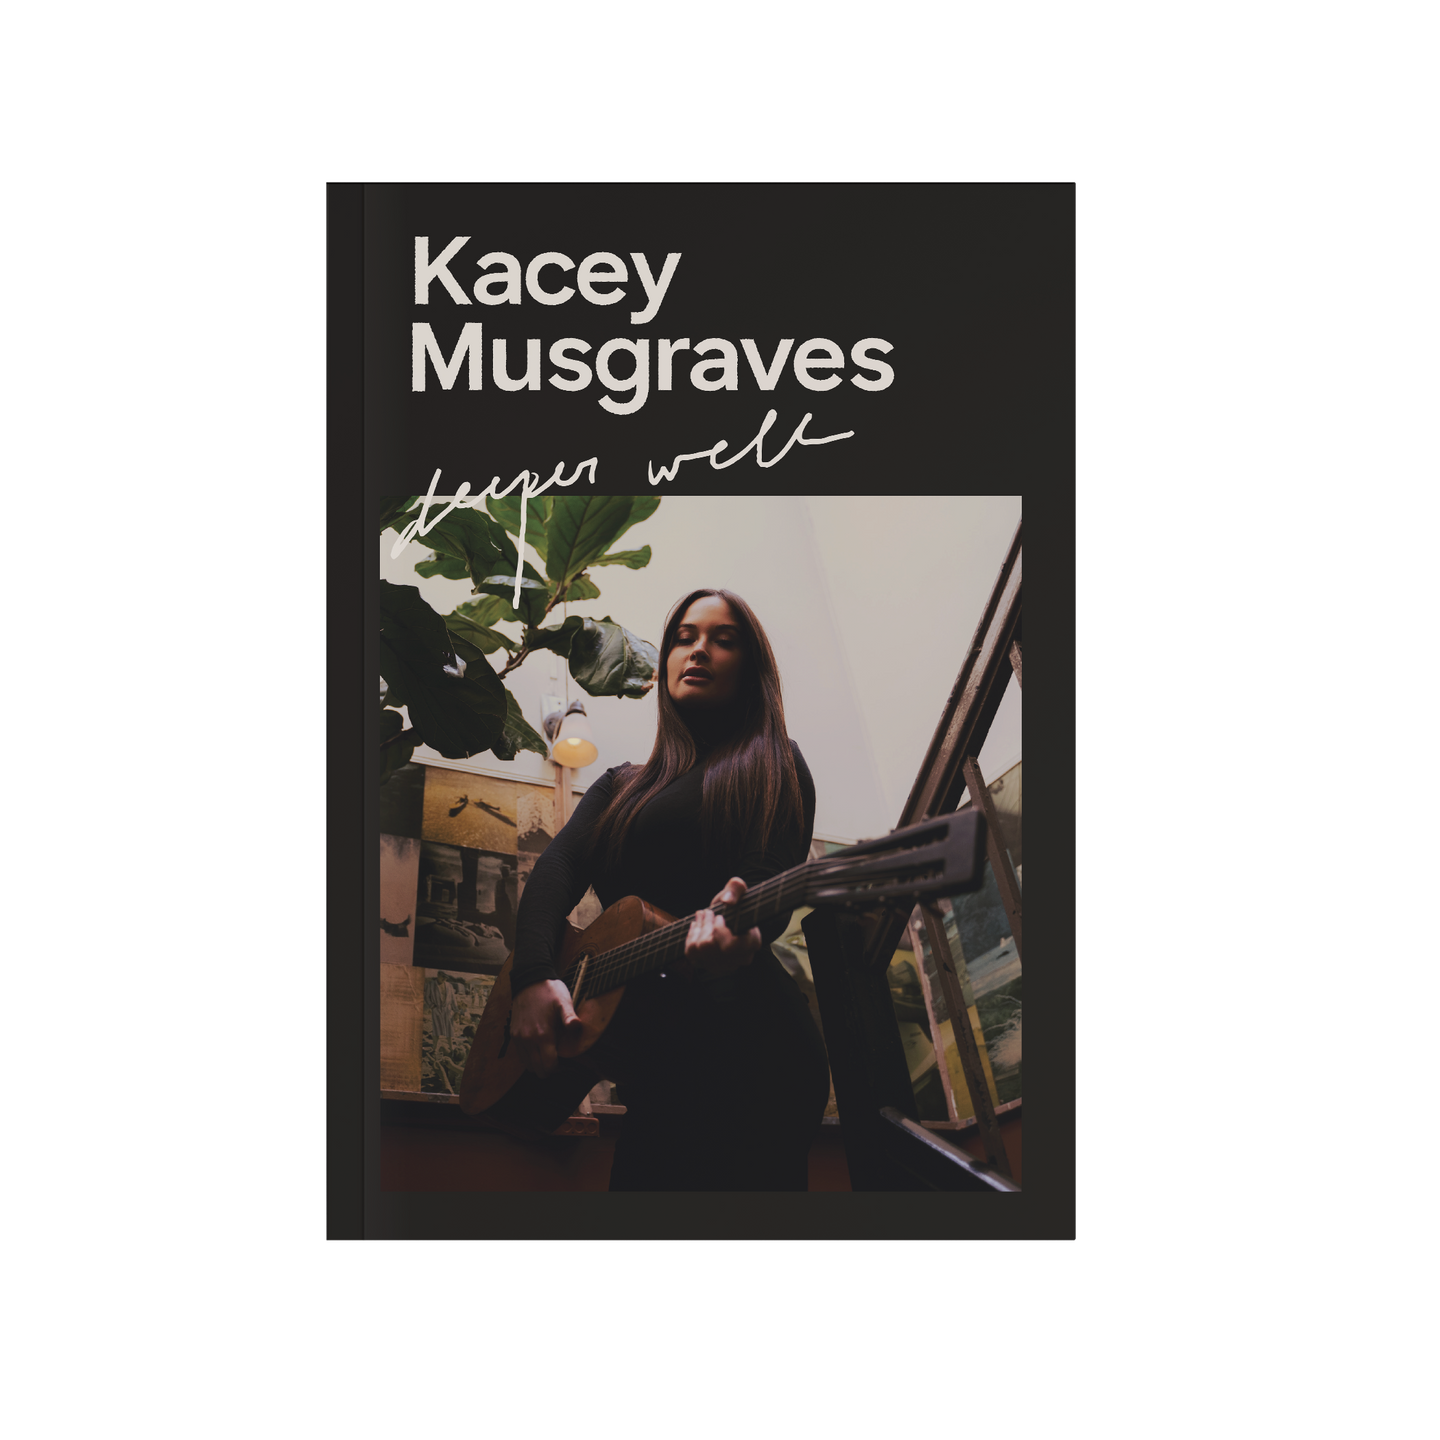 Kacey Musgraves Deeper Well CD Zine